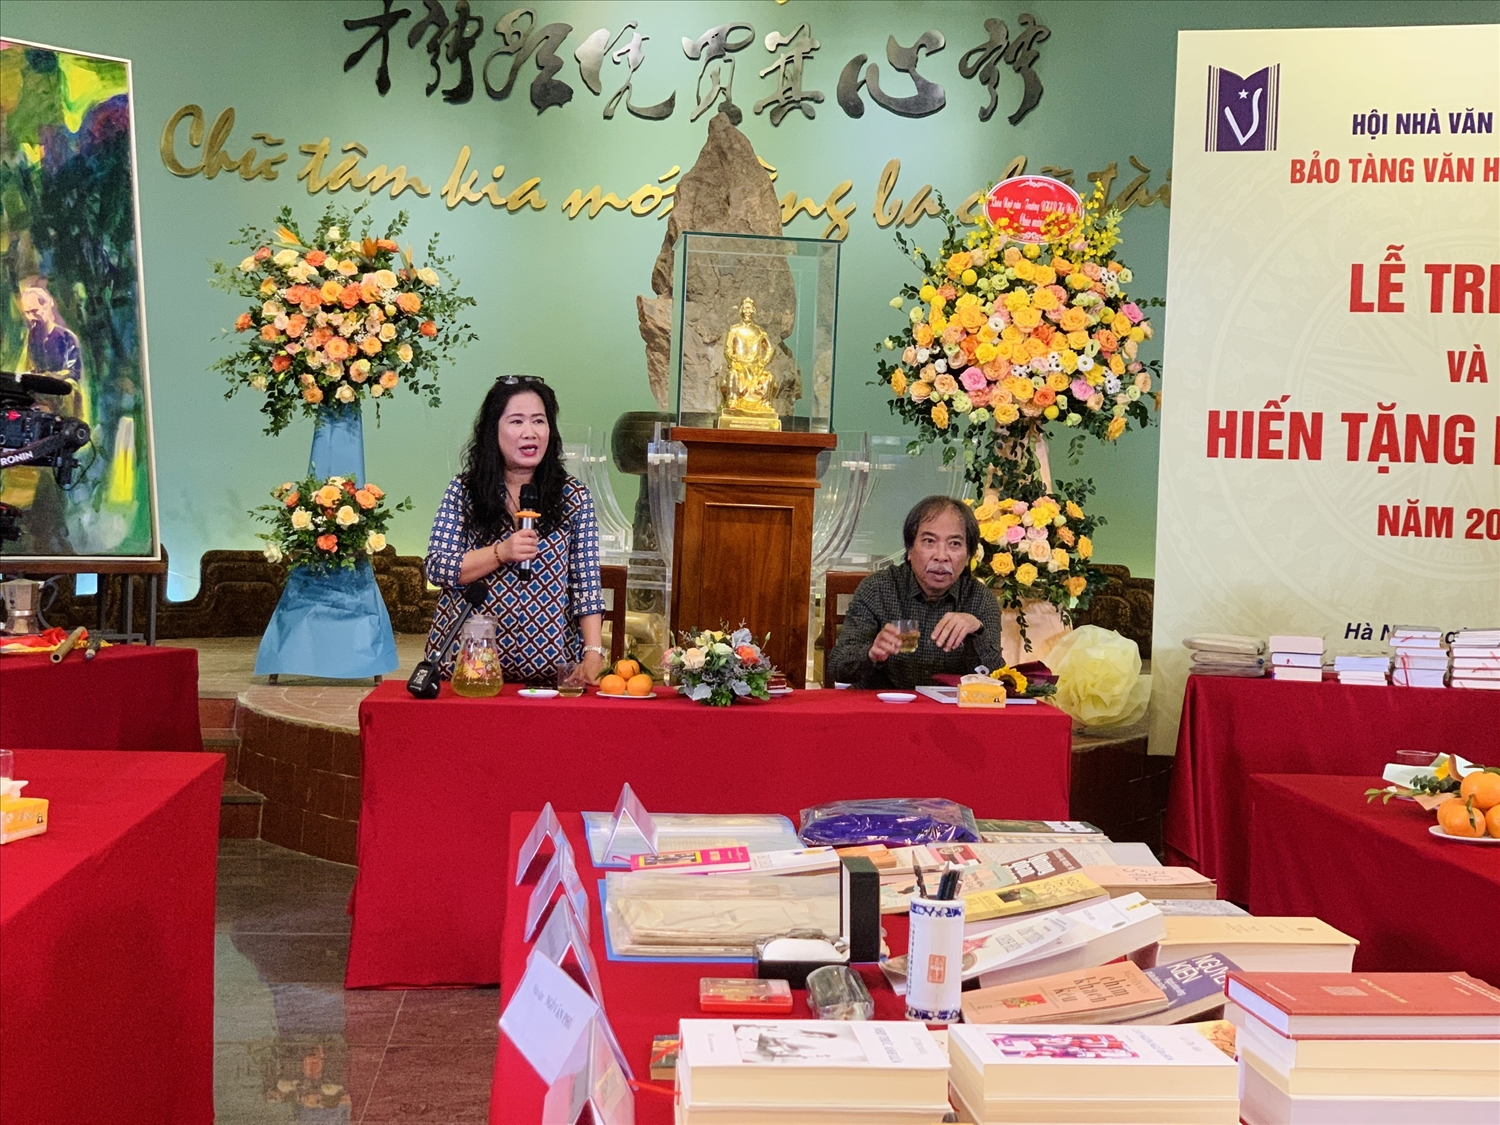 Nhà văn Nguyễn Thị Thu Huệ, Ủy viên thường vụ BCH Hội nhà Văn Việt Nam, Giám đốc Bảo tàng Văn học Việt Nam phát biểu tại buổi lễ